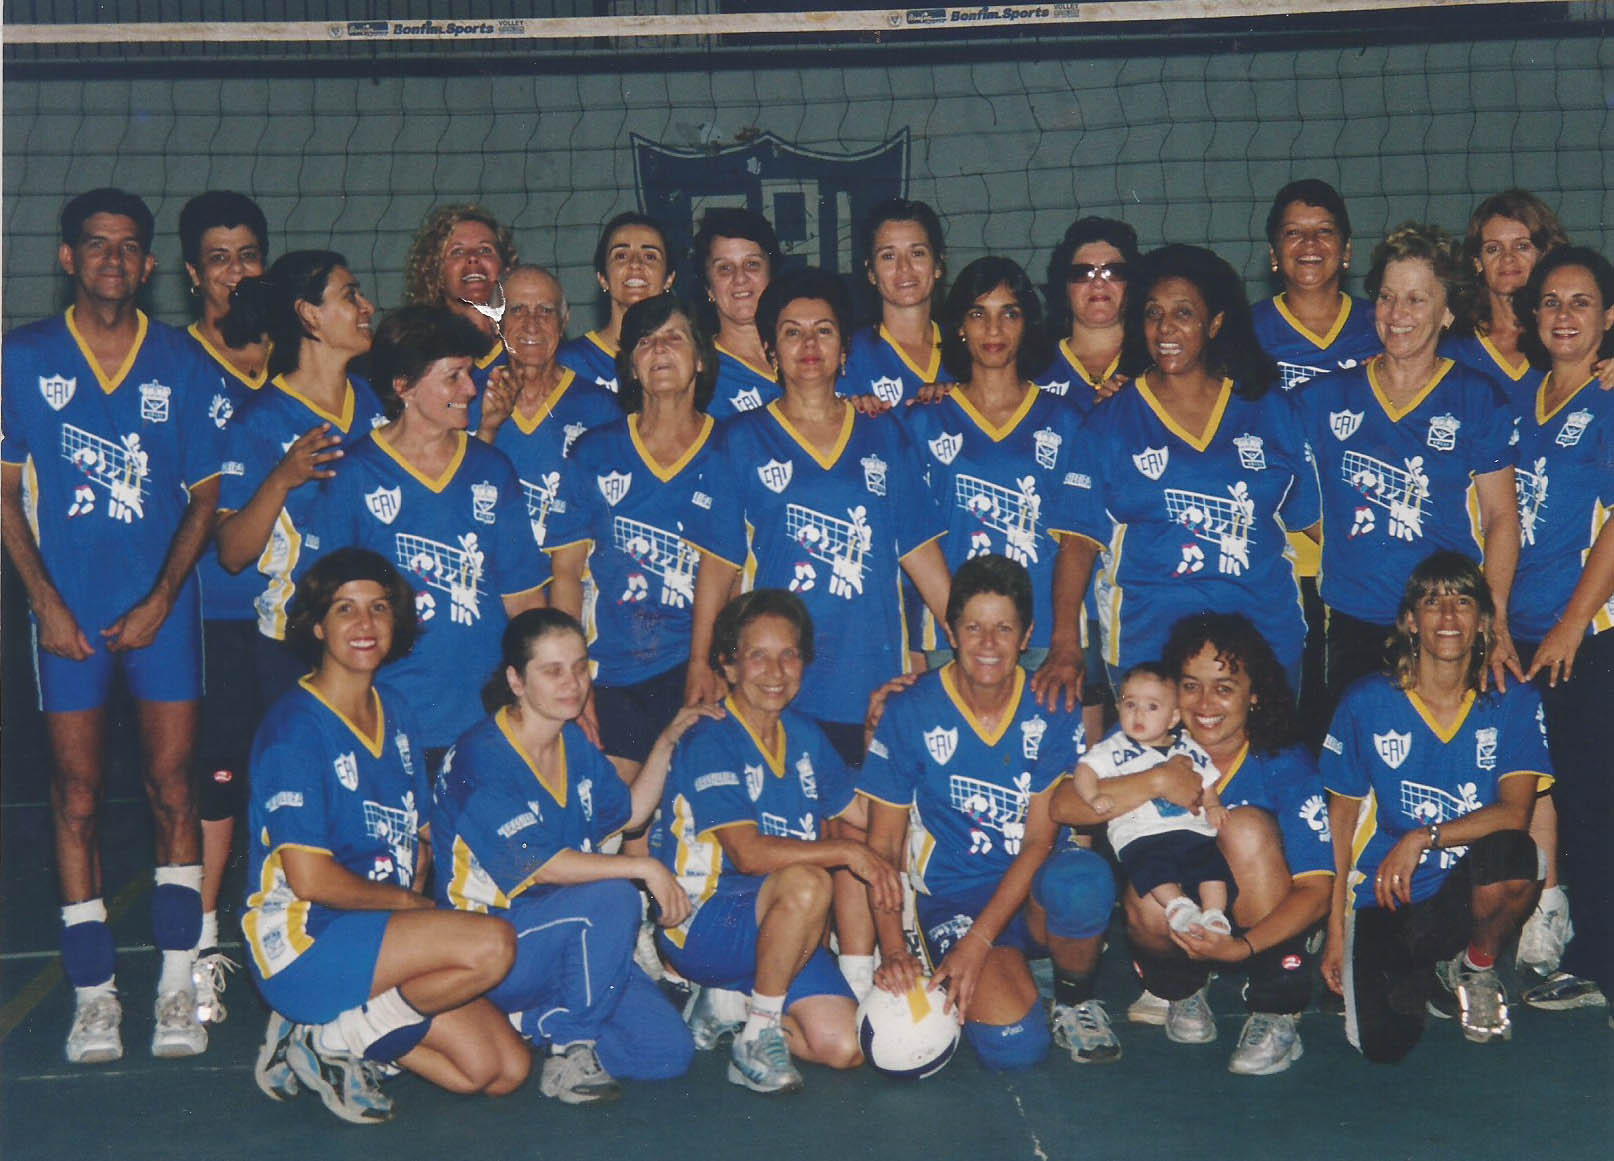 A foto acima é de 18 de dezembro de 2003, na quadra do Clube Atlético Itabirano. Estão presentes 26 pessoas (incluindo o bebê que hoje já passou dos 18 anos) e dois “bodes” (Joel Grisolia e o próprio Dr. Colombo)